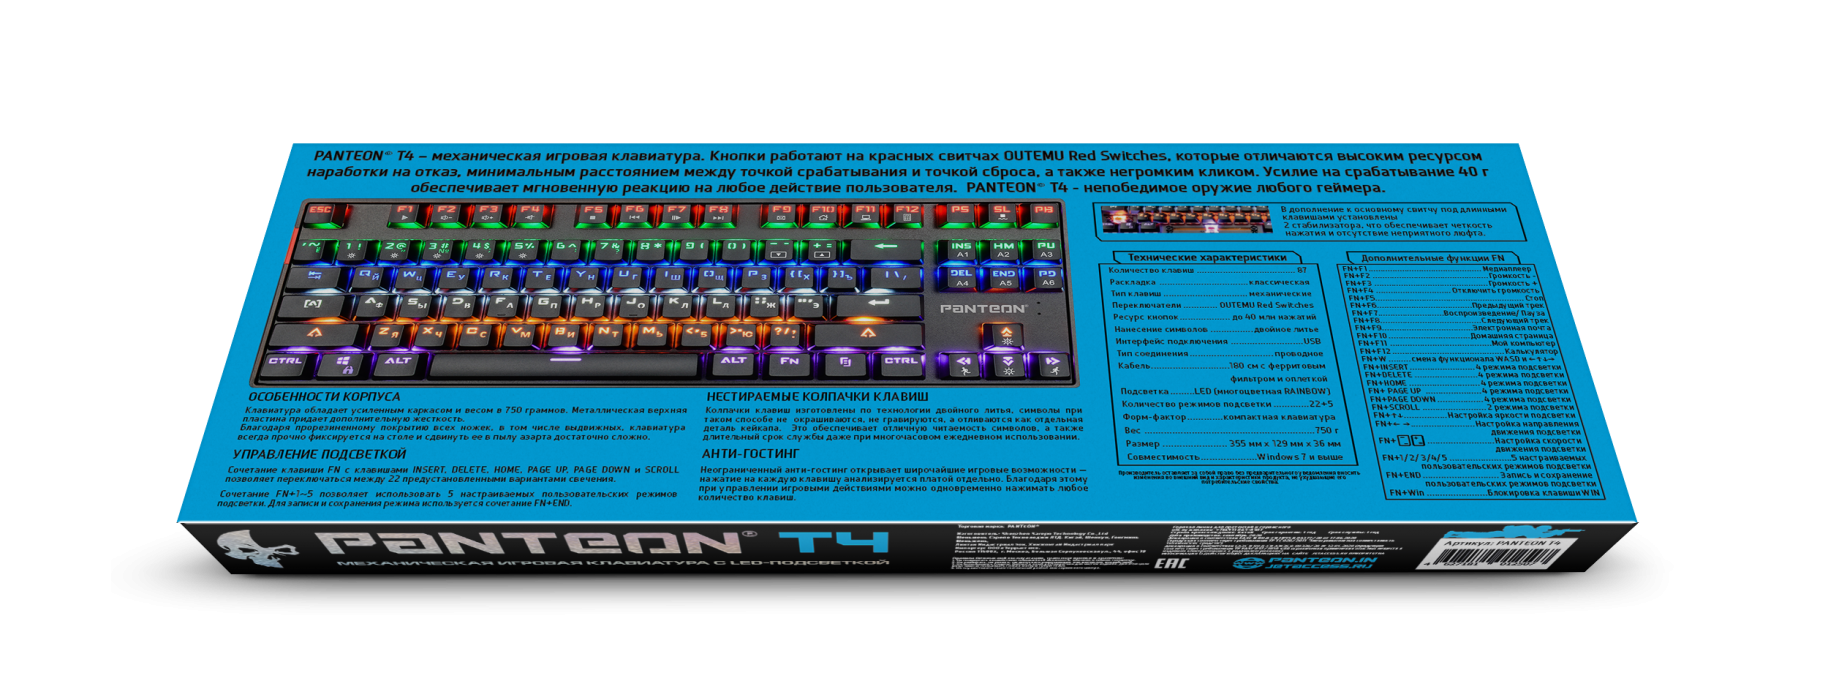 Механическая игровая клавиатура с LED-подсветкой PANTEON T44